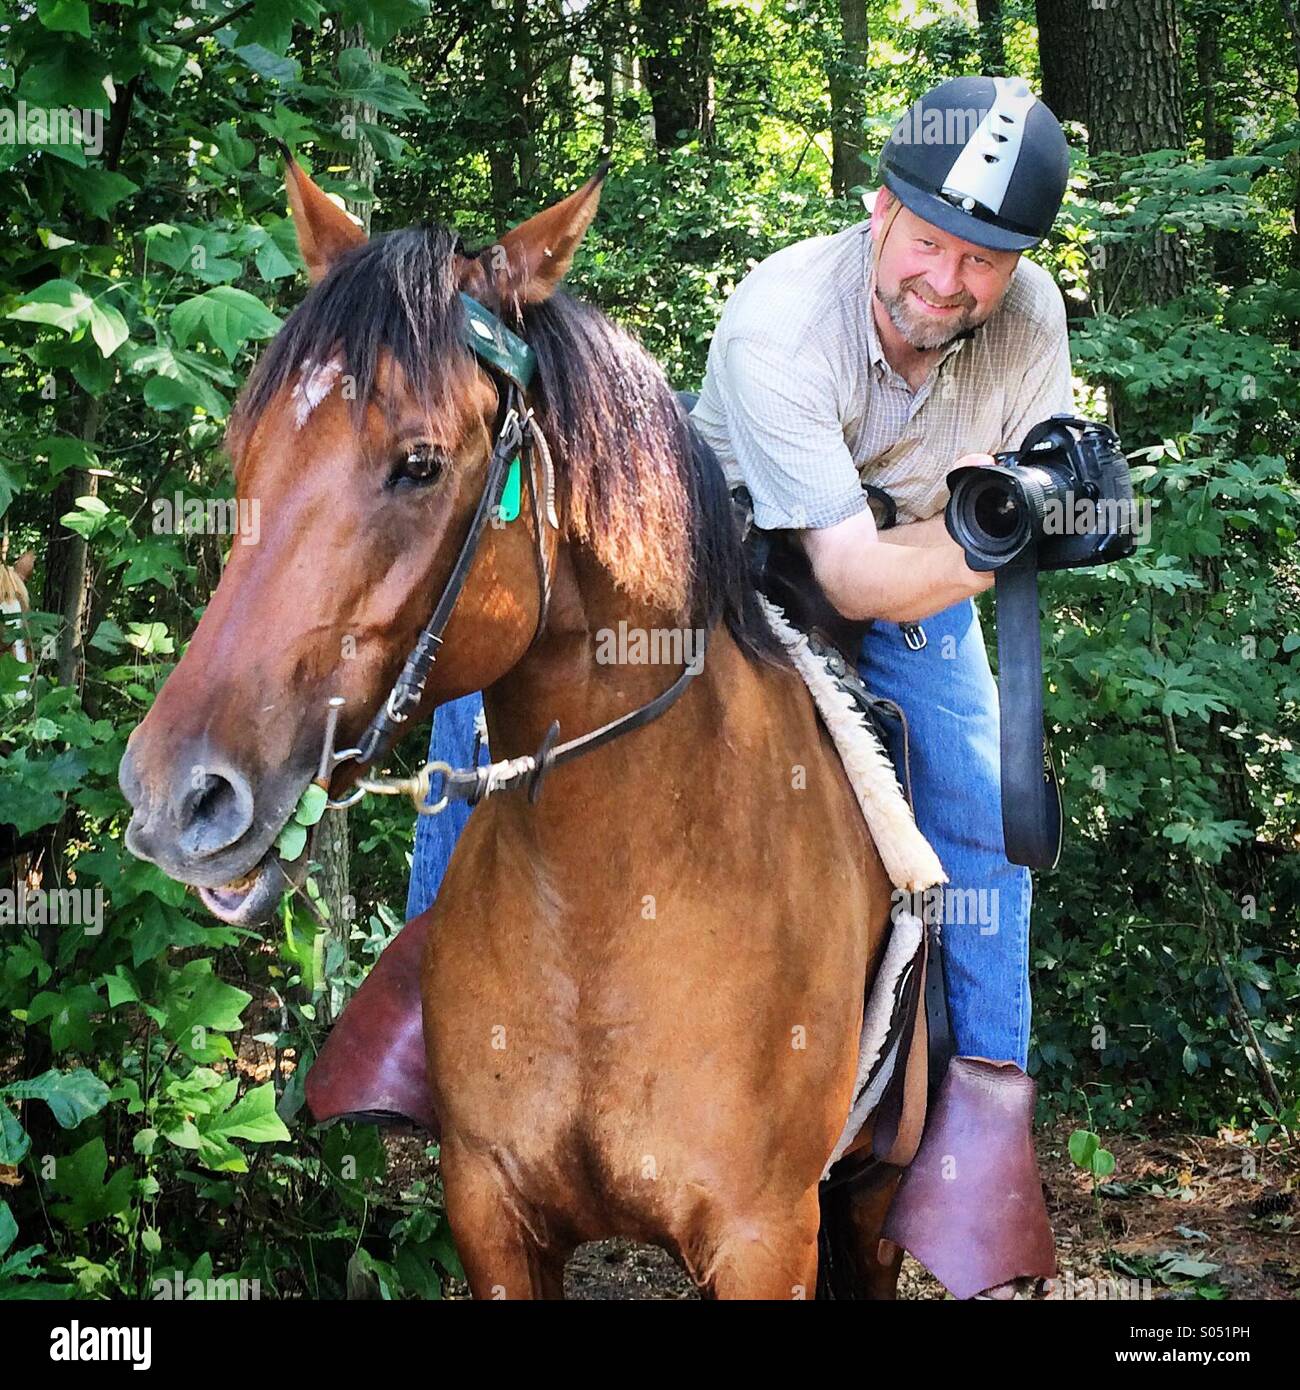 Man taking photographs on horseback Stock Photo